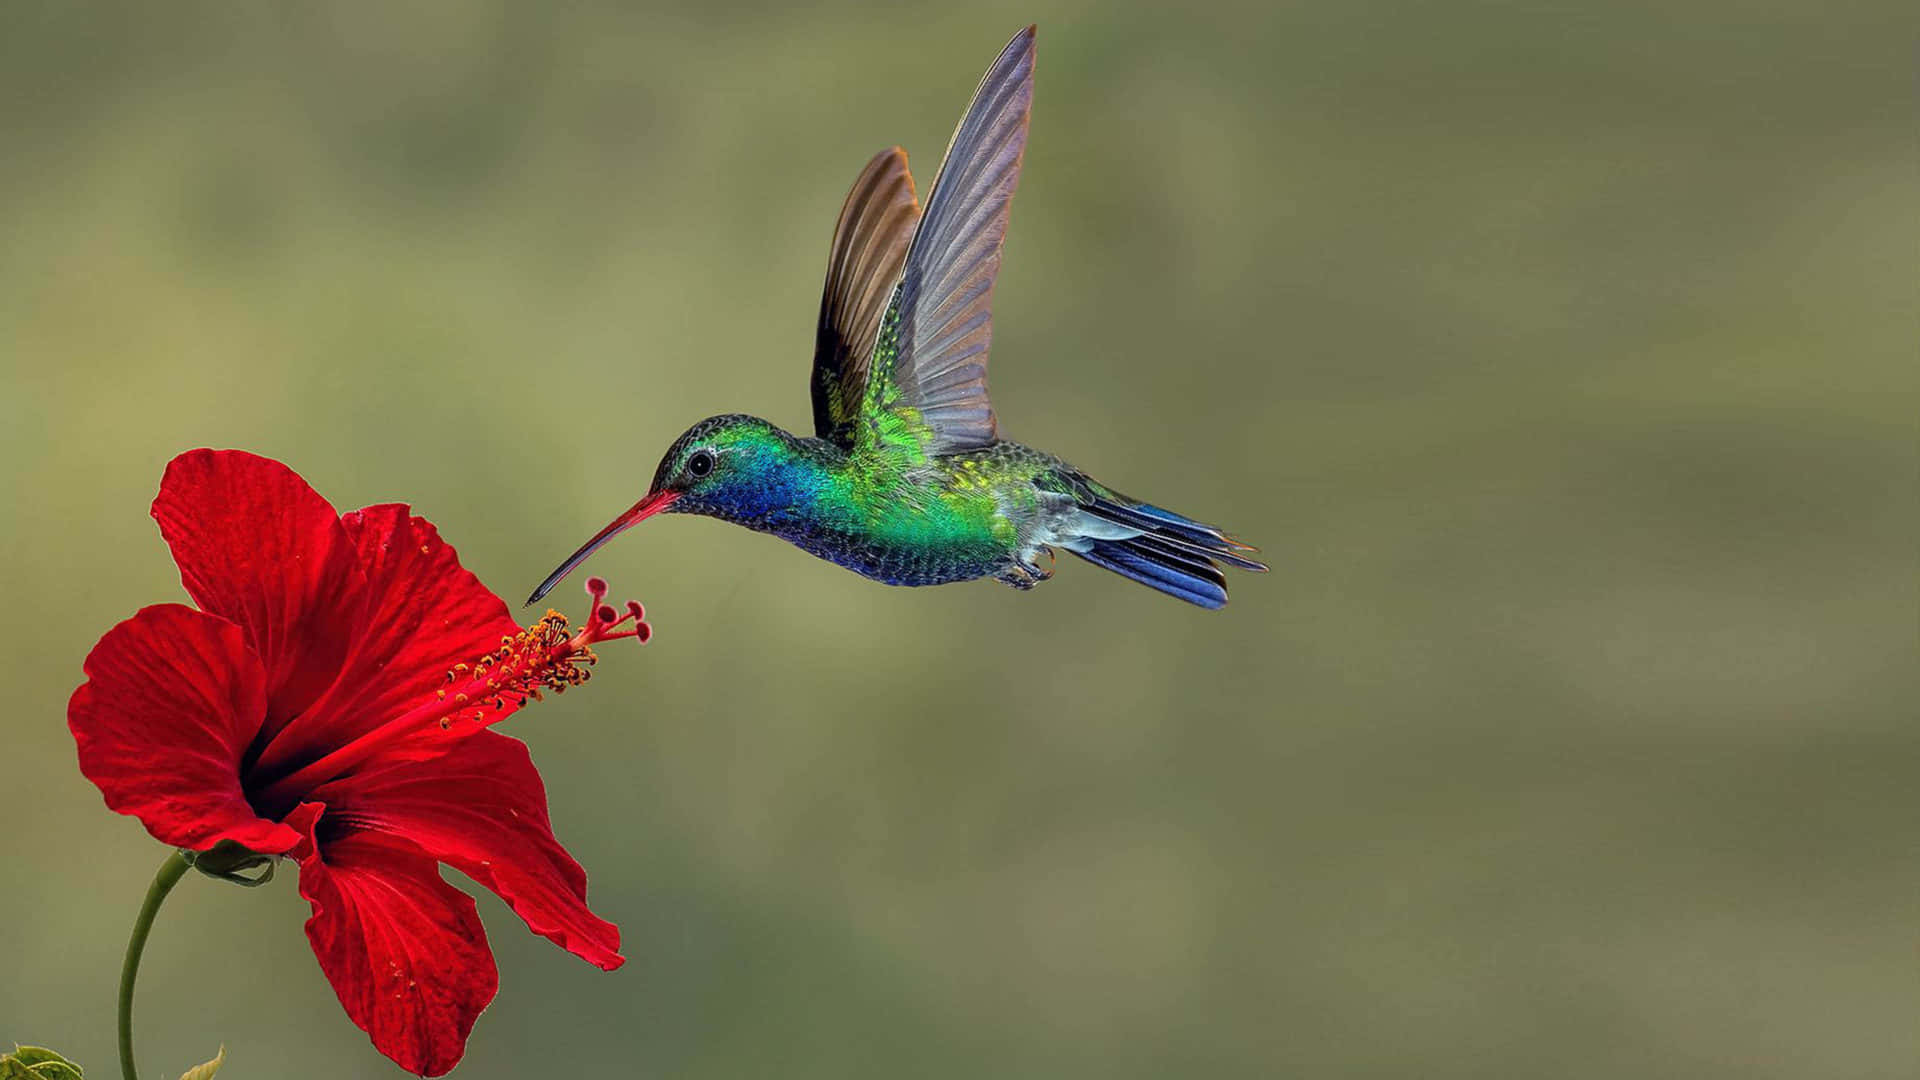 Mitdem Sammeln Von Nektar Von Einer Wunderschönen Blume Erfreut Uns Dieser Winzige Kolibri Mit Seinen Lebendigen Farben.